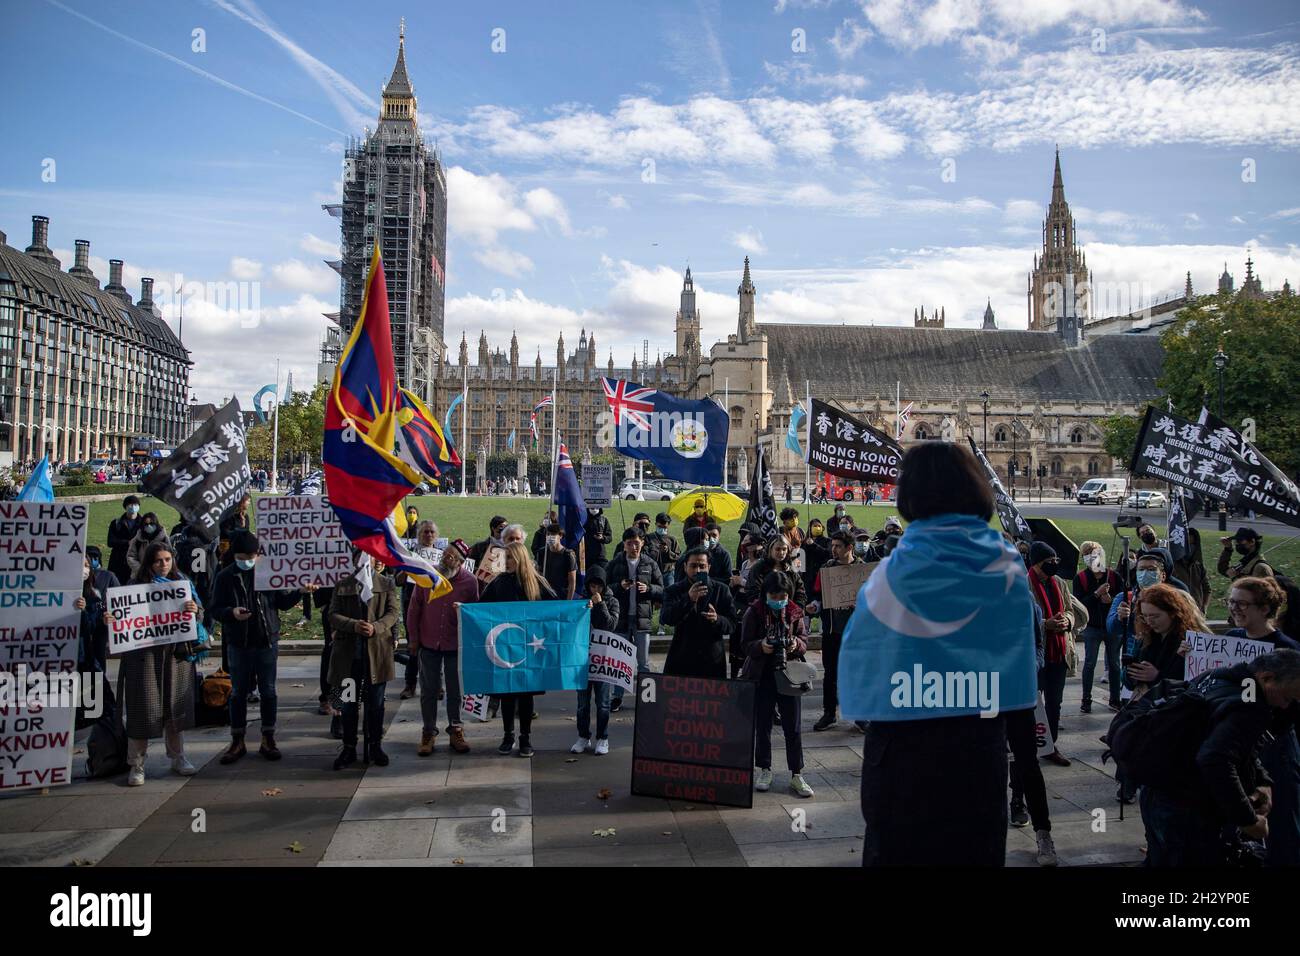 Londra, Regno Unito. 24 ottobre 2021. Un rappresentante di Uyghur parla ai manifestanti durante la manifestazione. Un raduno organizzato da sei diversi gruppi di diritti umani di Uyghur, Tibet e Hong Kong che chiedono “No alle Olimpiadi invernali di Pechino, No al genocidio”, che si è collegato a tre obiettivi fondamentali: "Protesta contro le Olimpiadi invernali di Pechino del 2022", "Uyghurs, tibetani e popolo di Hong Kong" e "consegnare una torcia relè per interpretare lo spirito olimpico". Credit: SOPA Images Limited/Alamy Live News Foto Stock